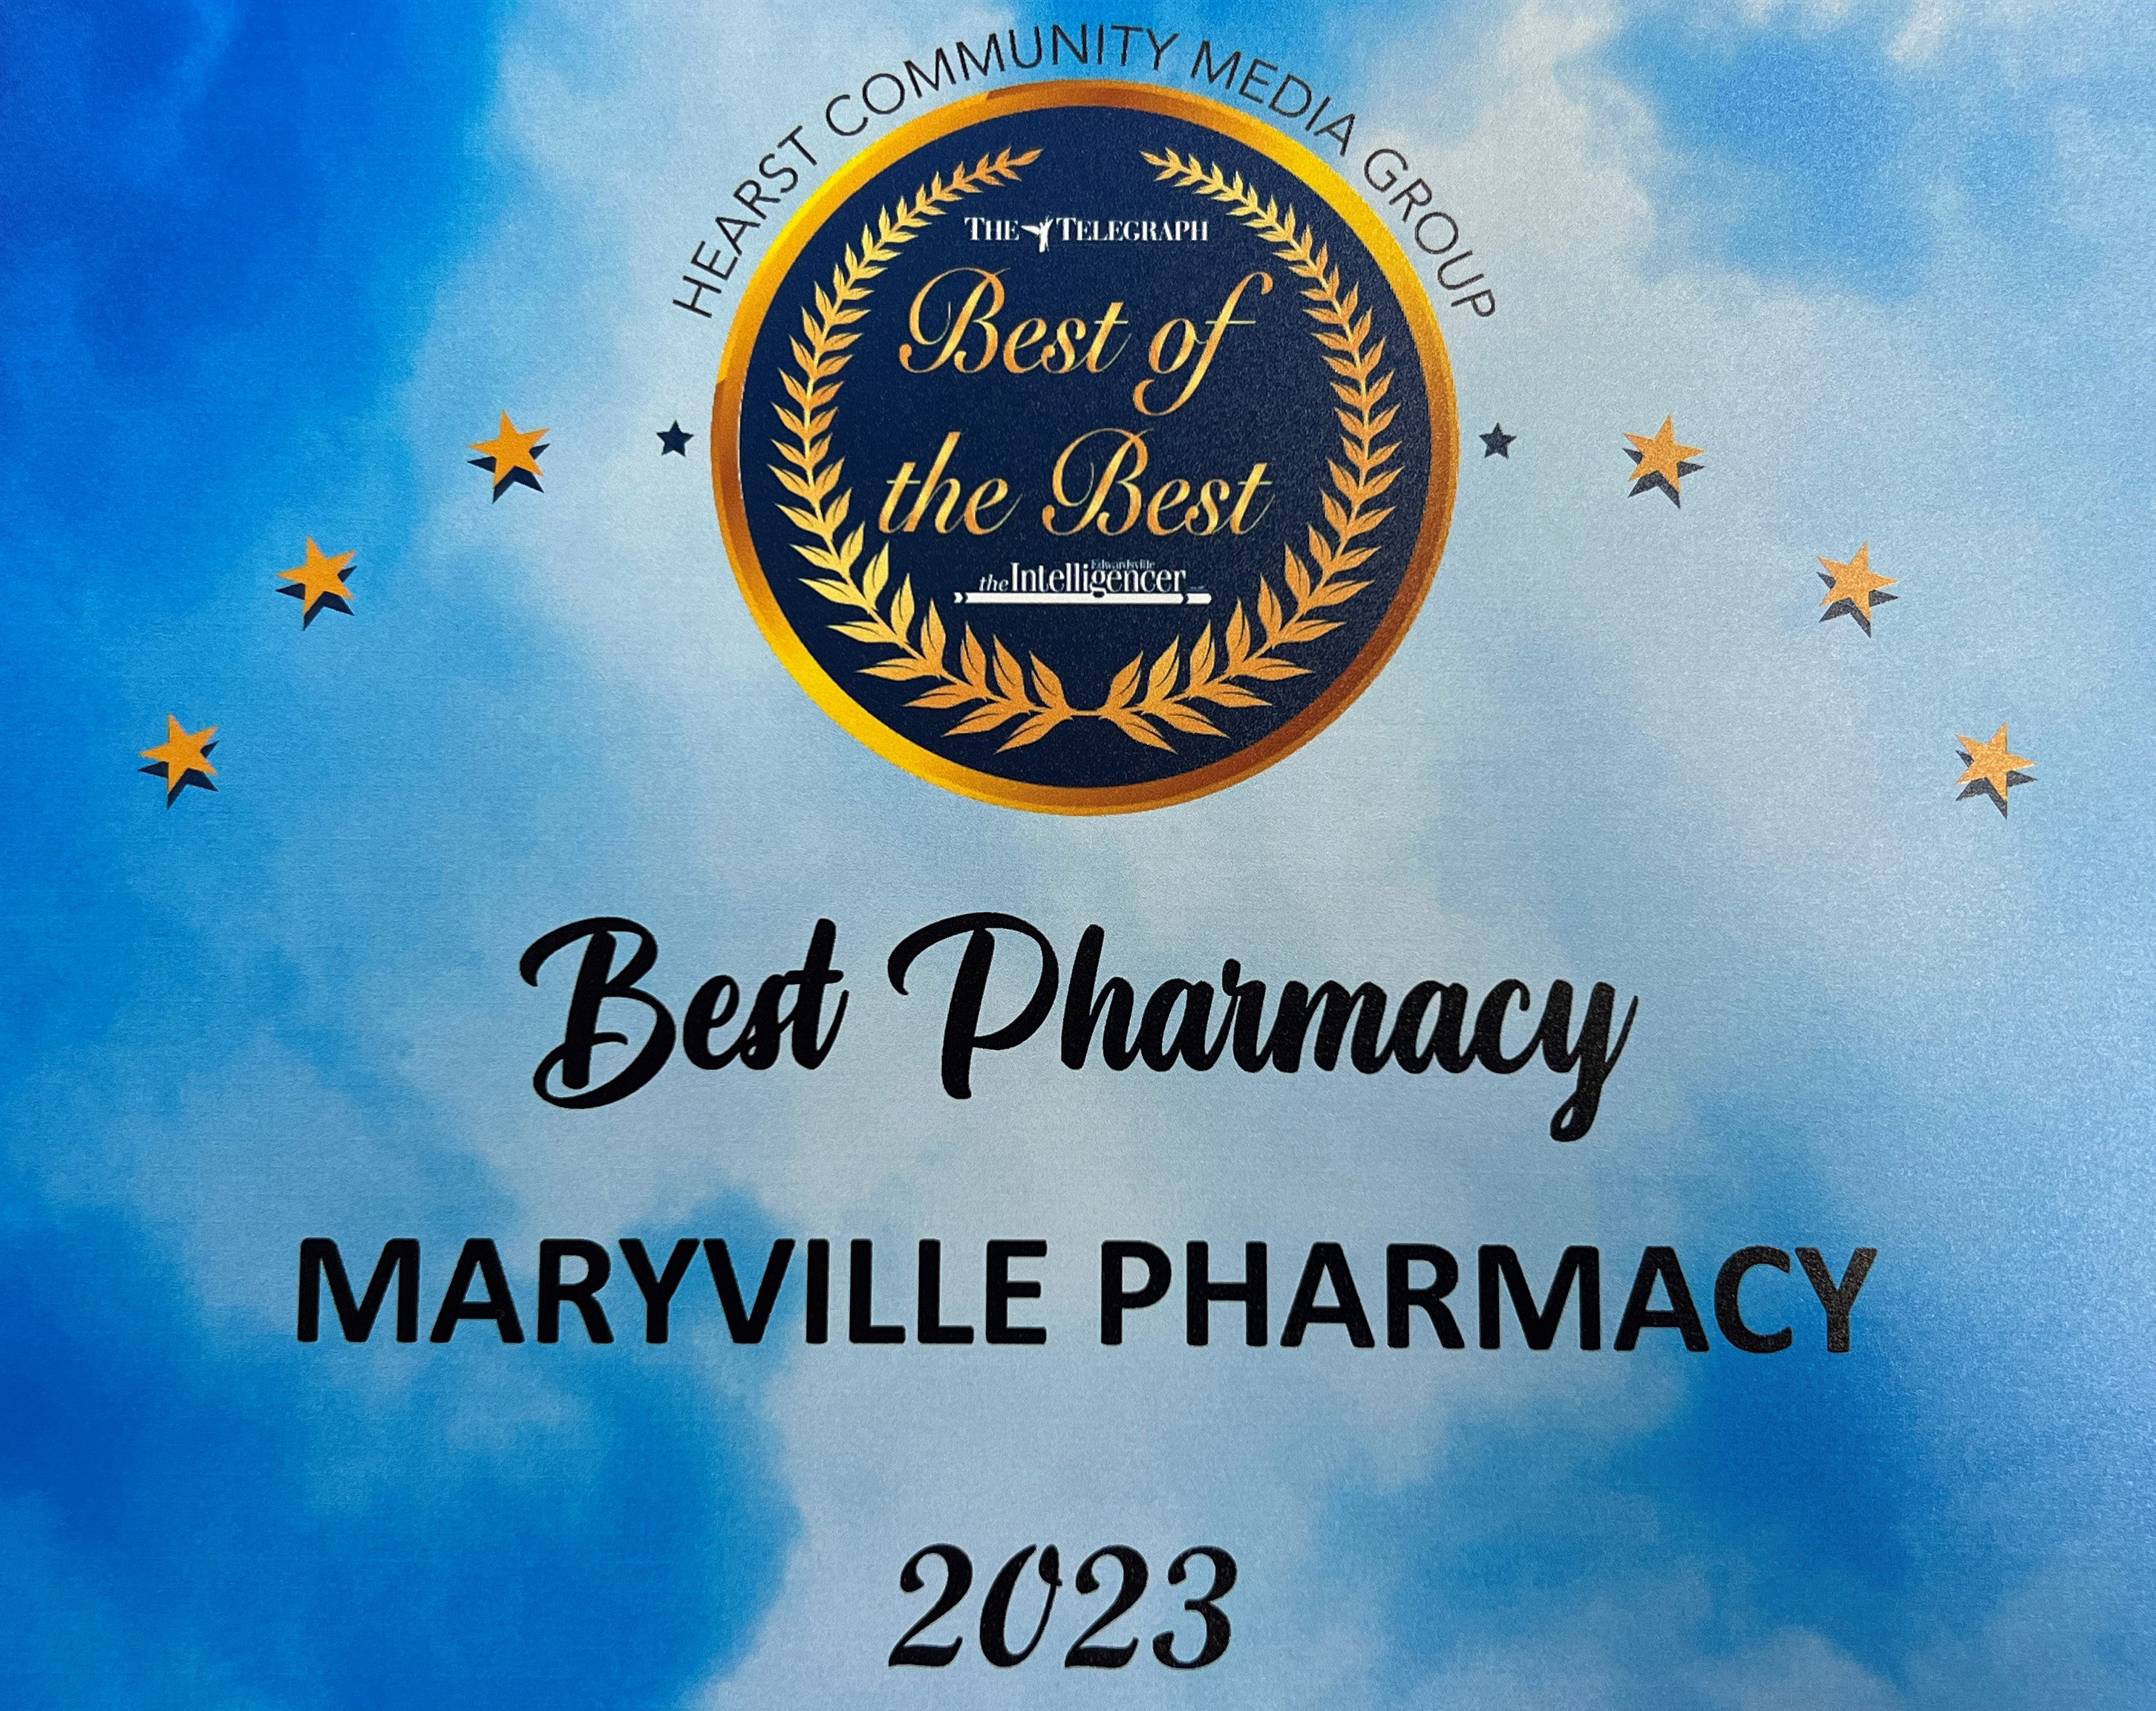 Maryville Pharmacy Winner of Alton Telegraph Best of Best Pharmacy